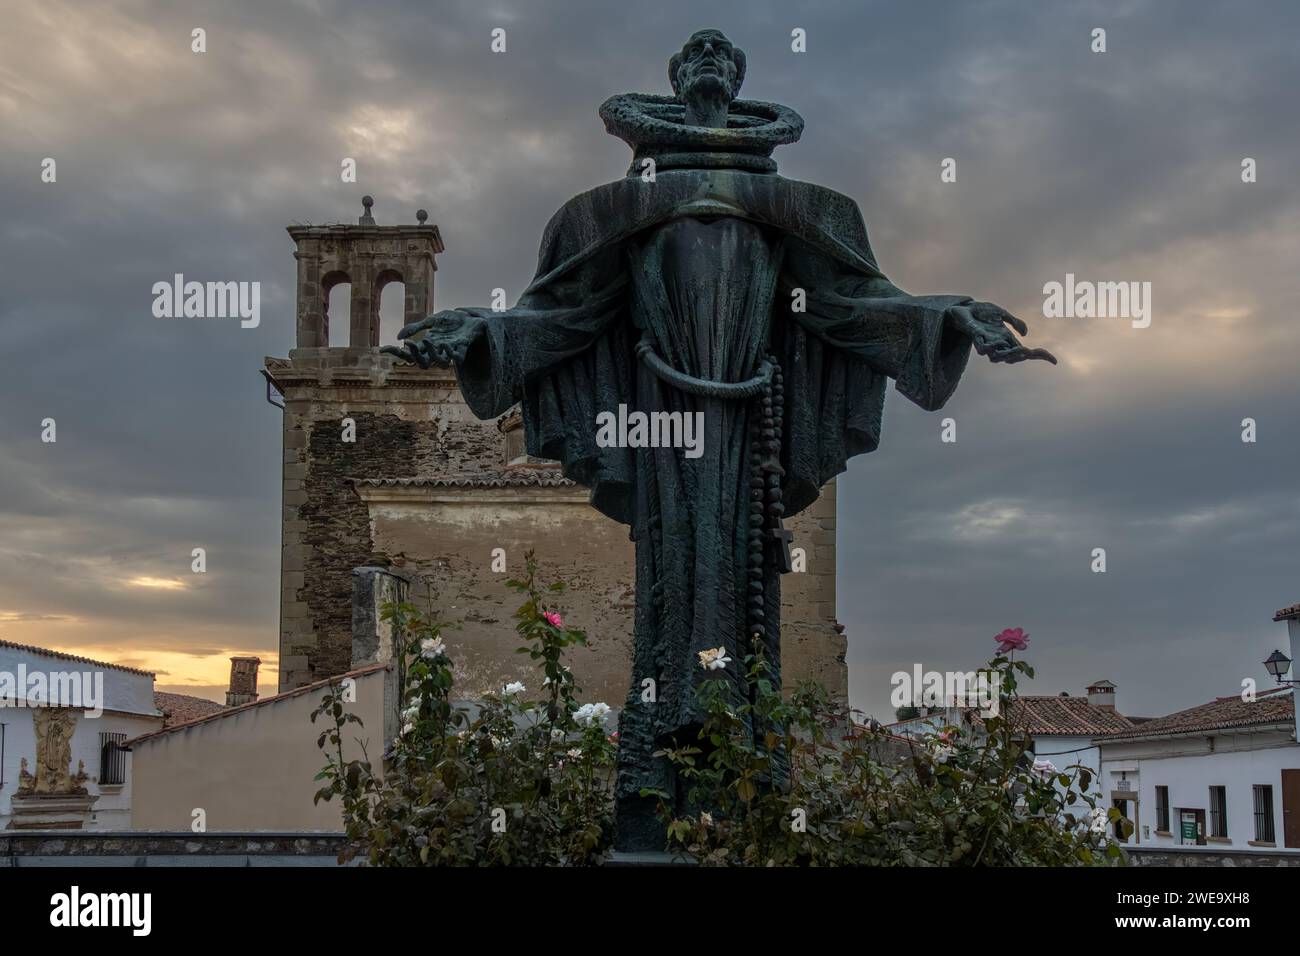 Alcántara, puesta de sol desde la plaza de España donde se encuentra la moderna estatua de Bronce de San Pedro de Alcántara, Cáceres, España. Banque D'Images